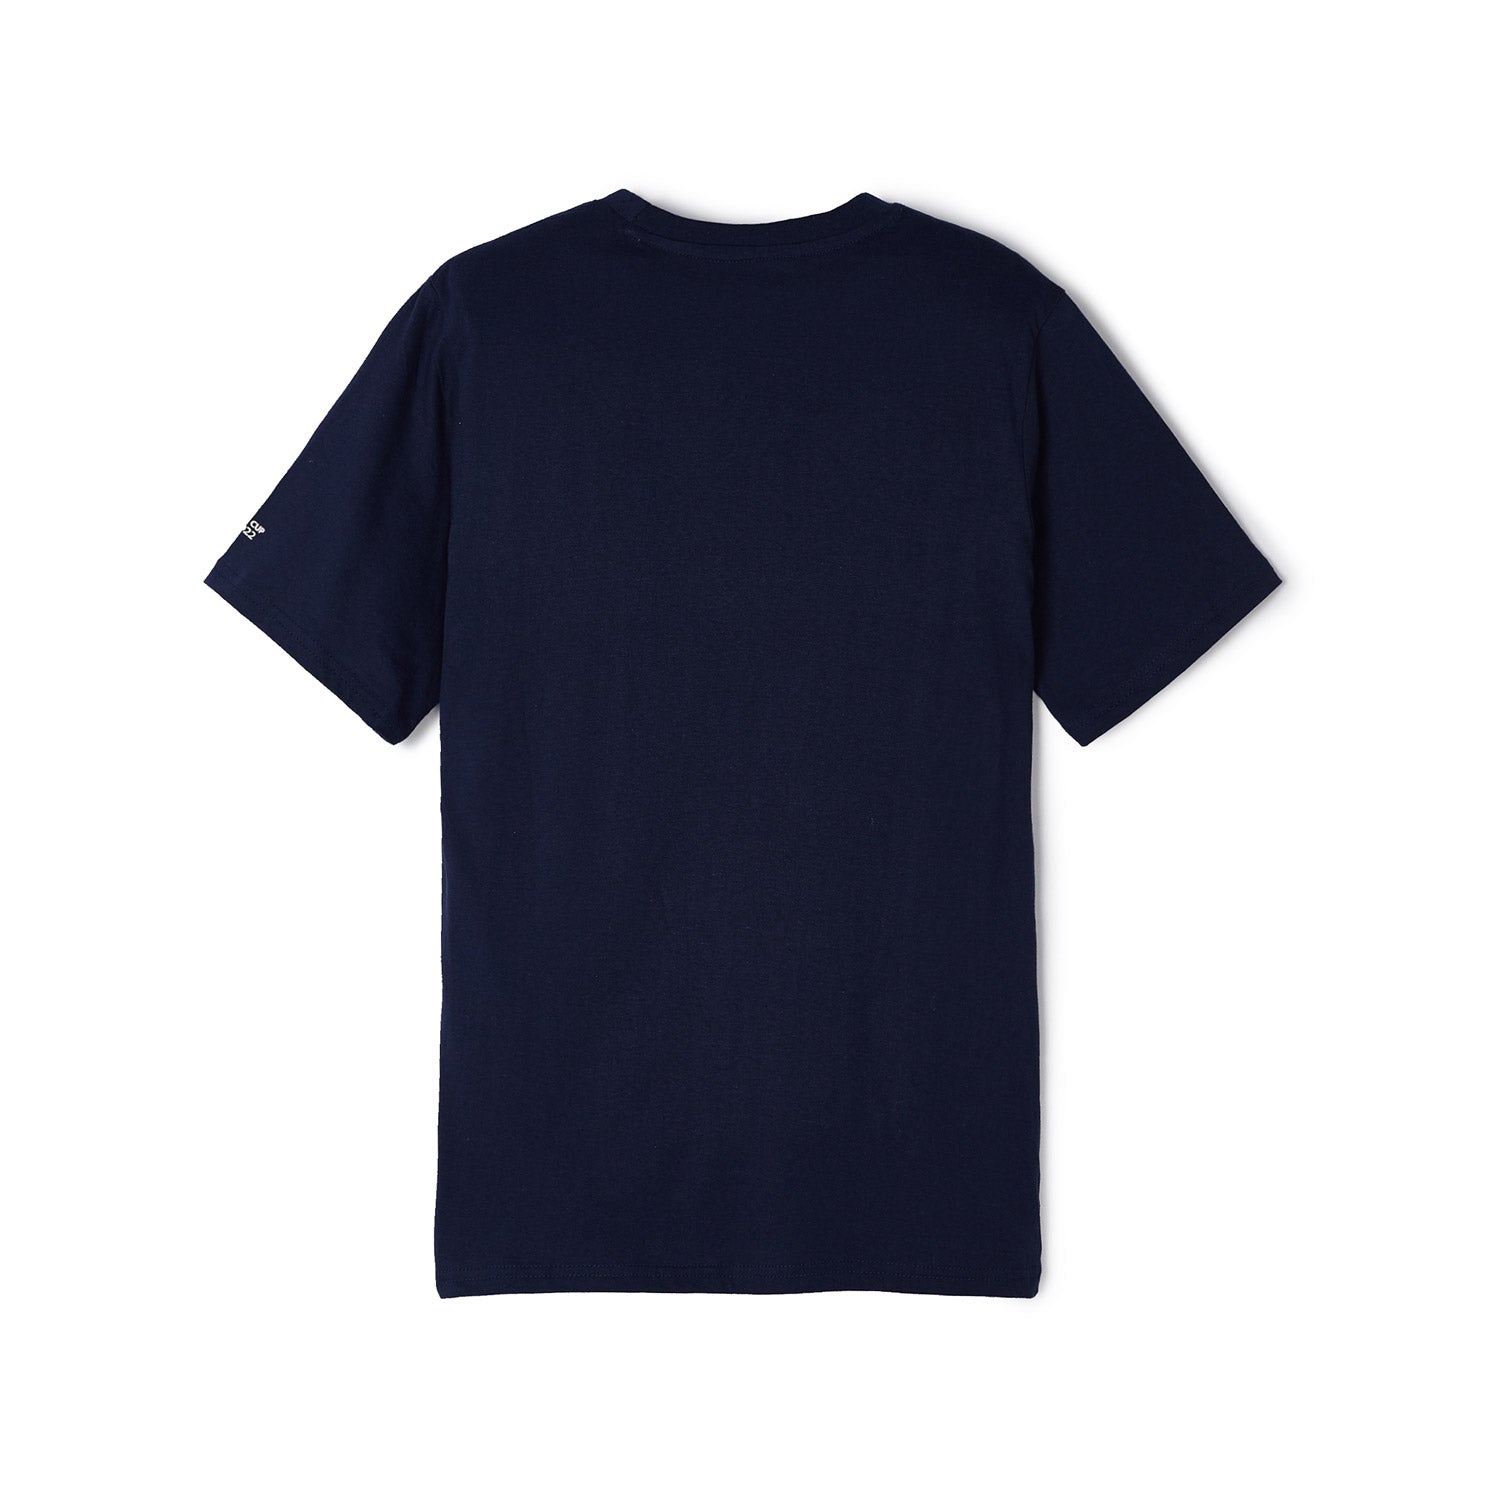 2022 World Cup USA Blue T-Shirt - Men's